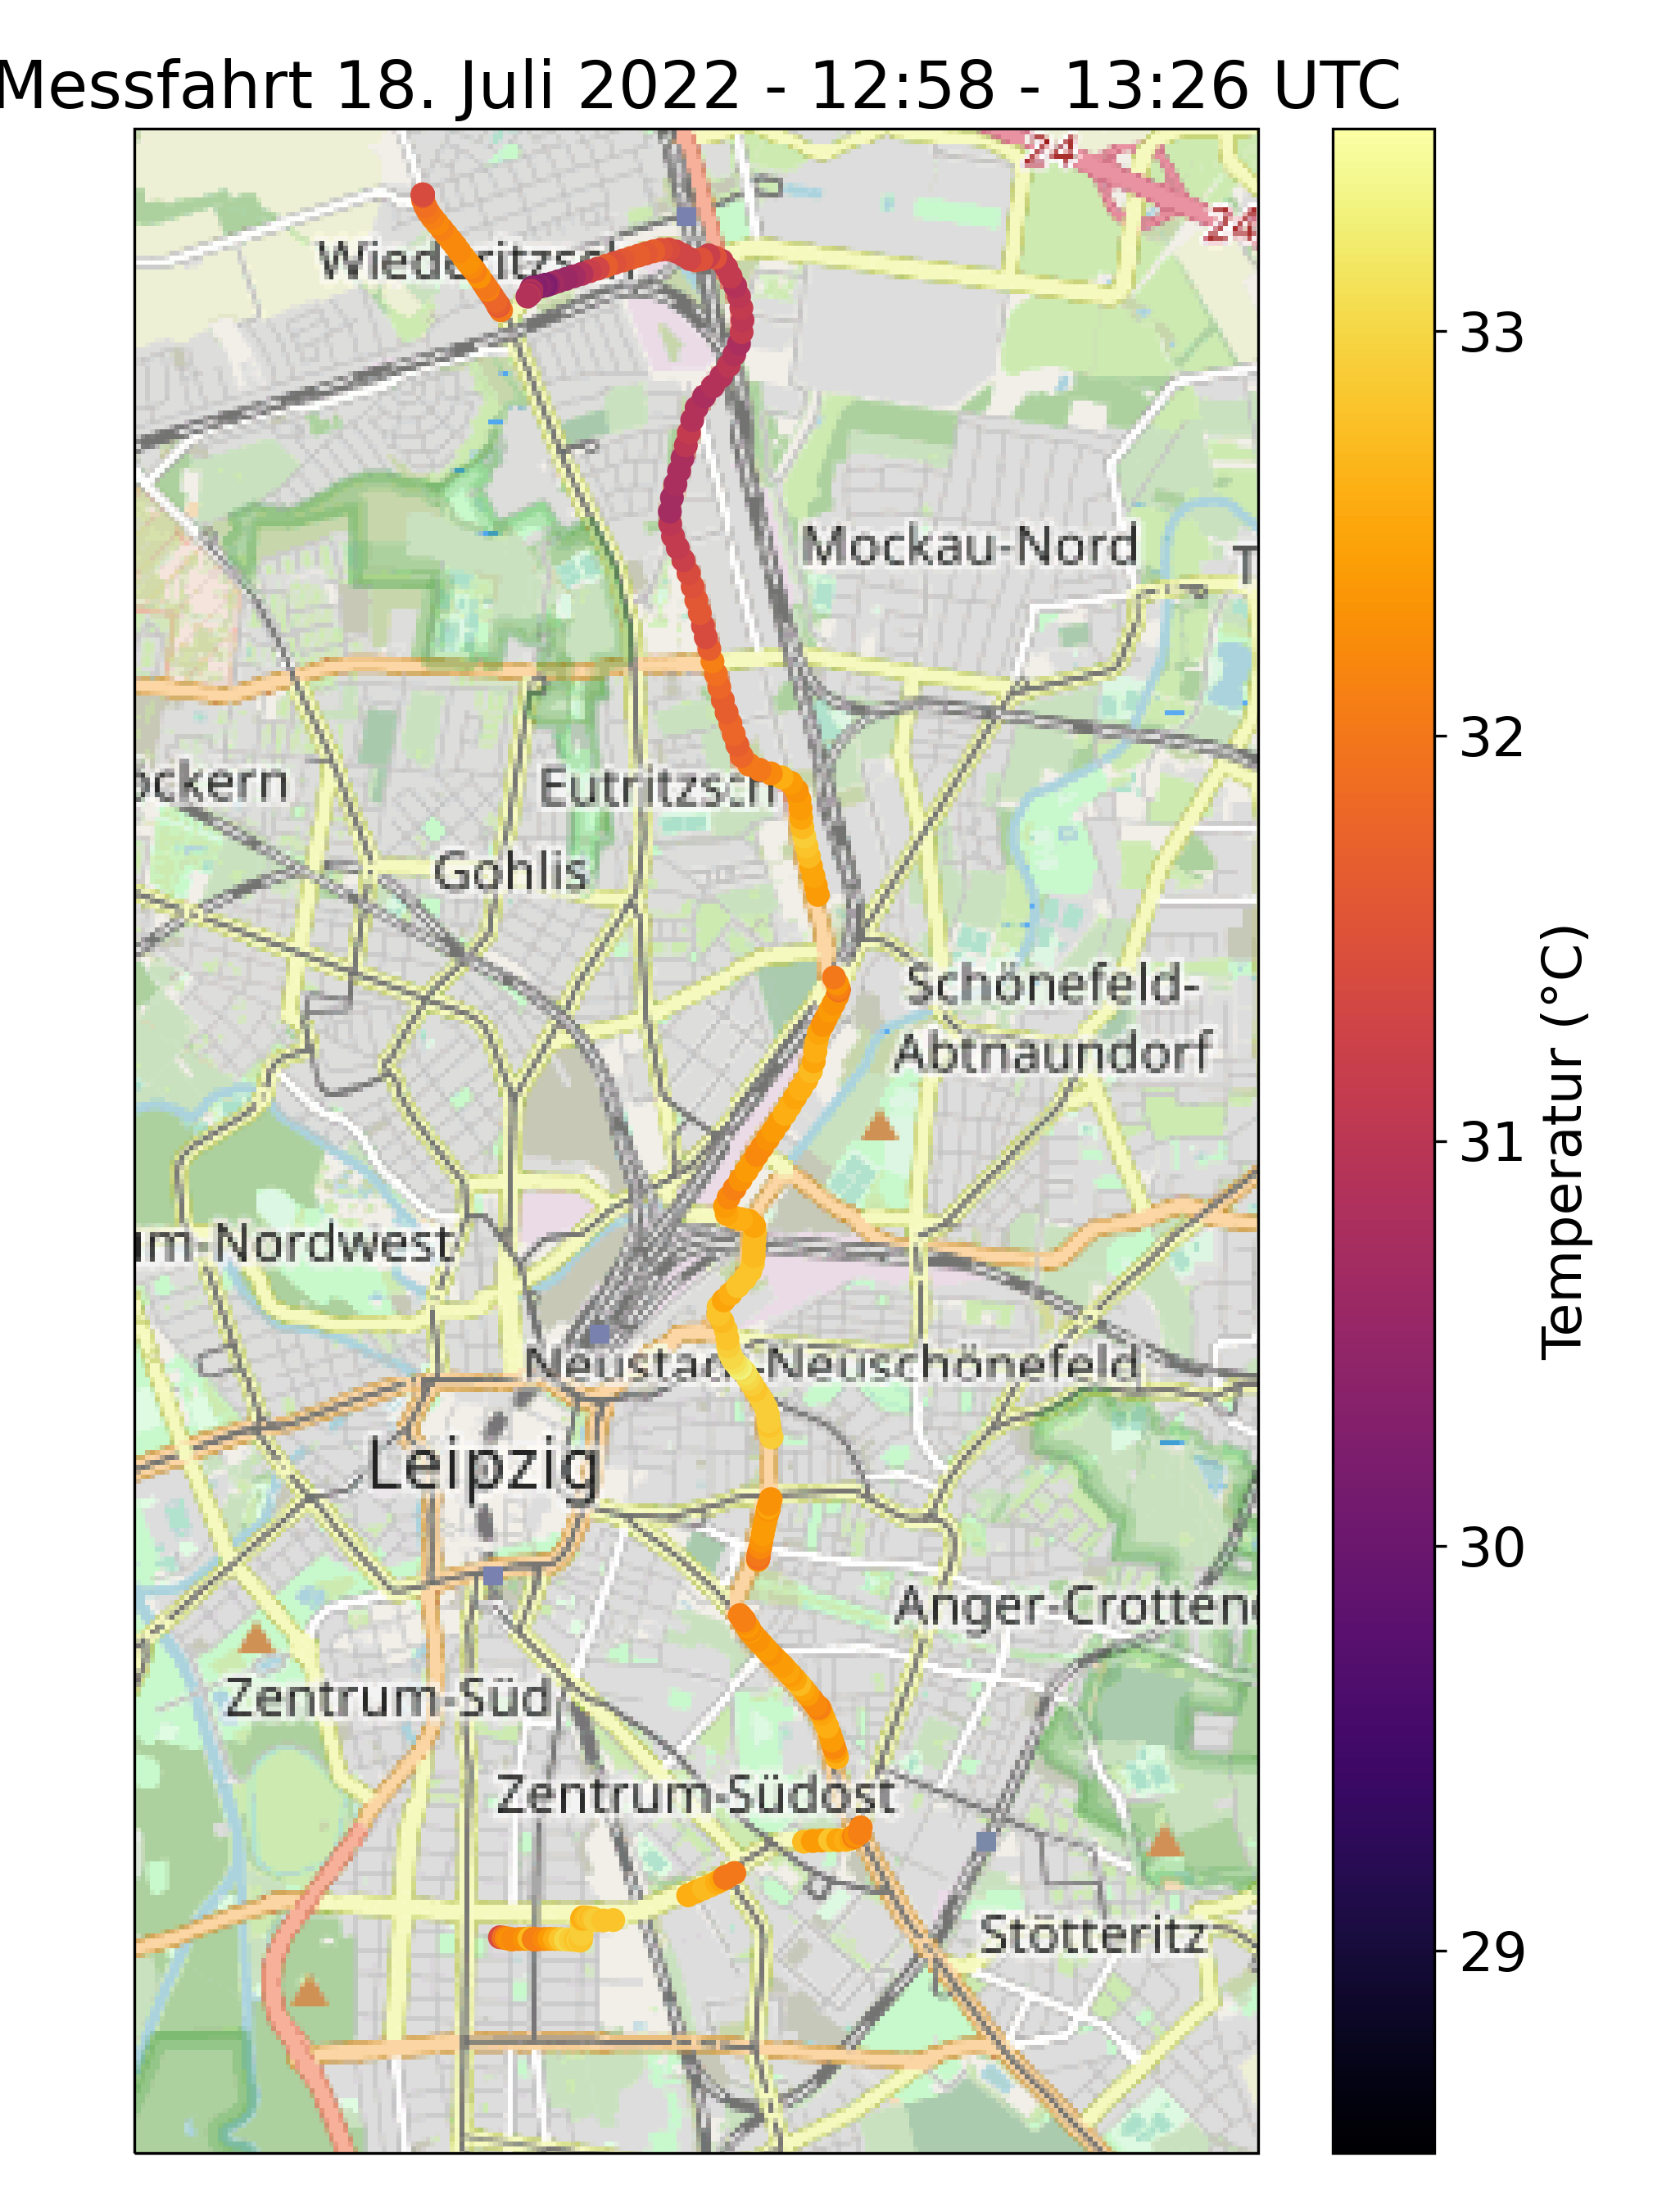 Karte von Leipzig mit Temperaturmessungen als farbige Punkte dargestellt. Gezeigt wird eine Nord-Süd Strecke aus dem Zentrum-Süd nach Wiederitzsch.